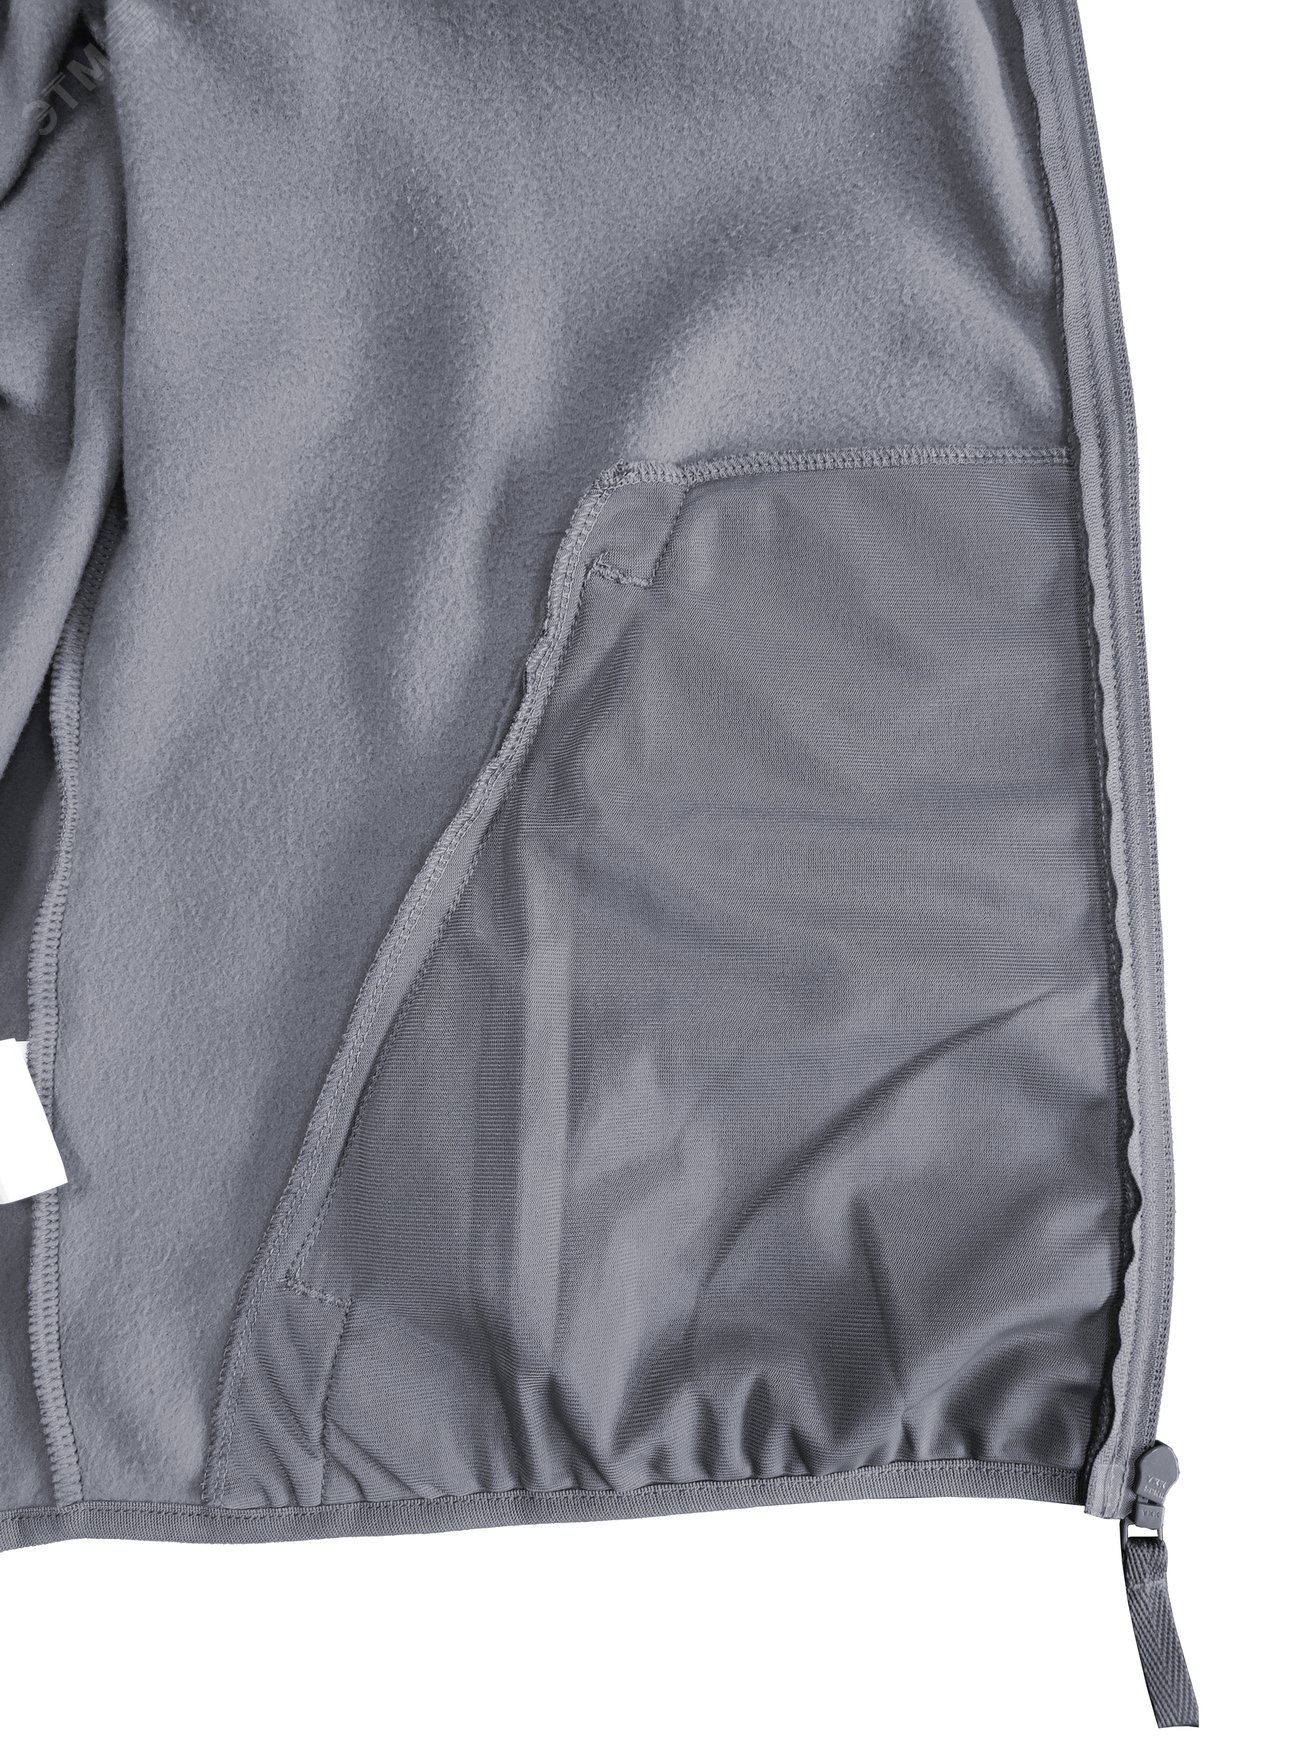 Куртка флисовая арт. JF-01 на молнии цв. серый 52-54 р. L 142302 Эталон-Спецодежда - превью 10